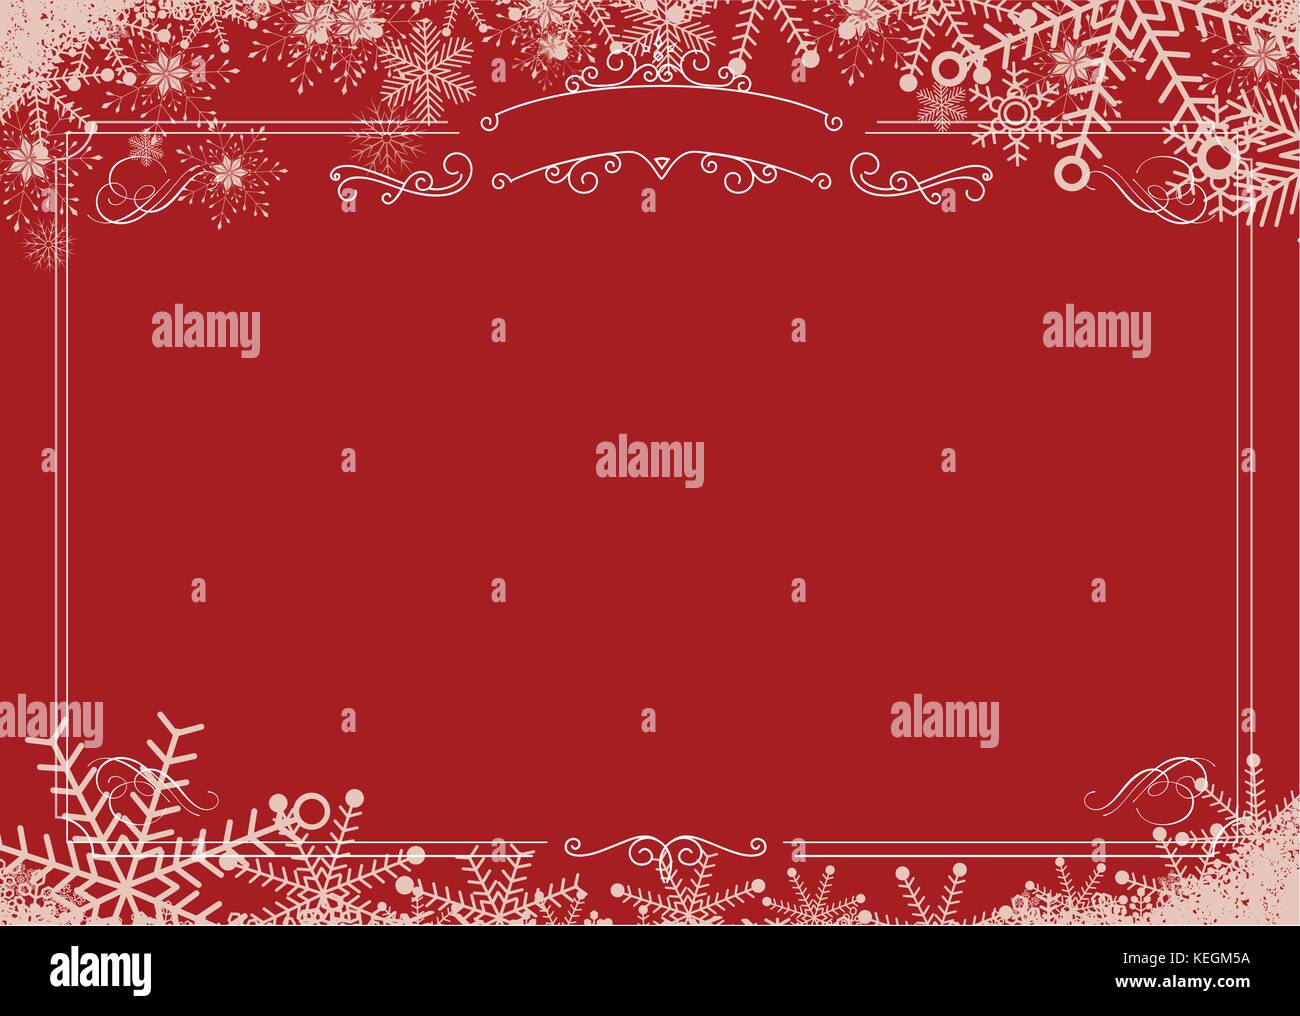 Format A3 cafe Menü - Weihnachten Winter Schneeflocke, retro, Rand rot strukturierten Hintergrund Stock Vektor